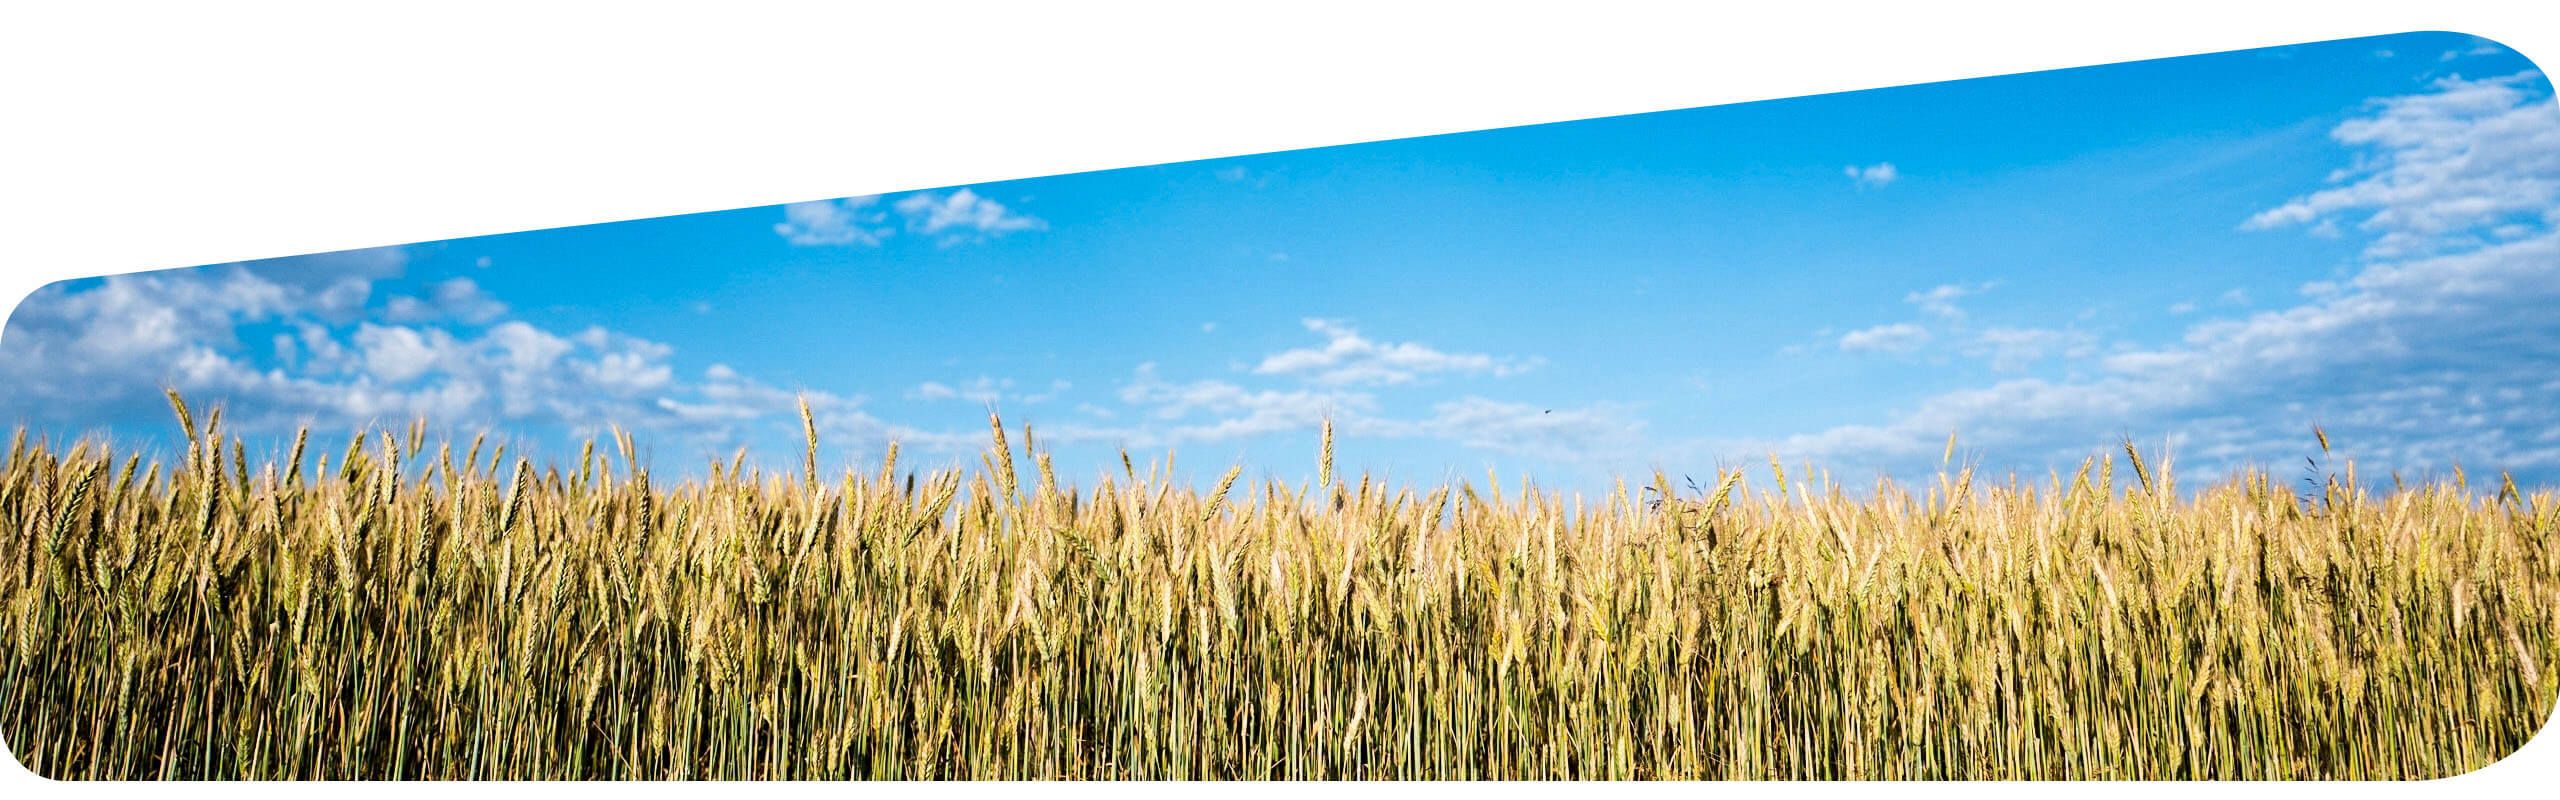 Corn crop and blue skies